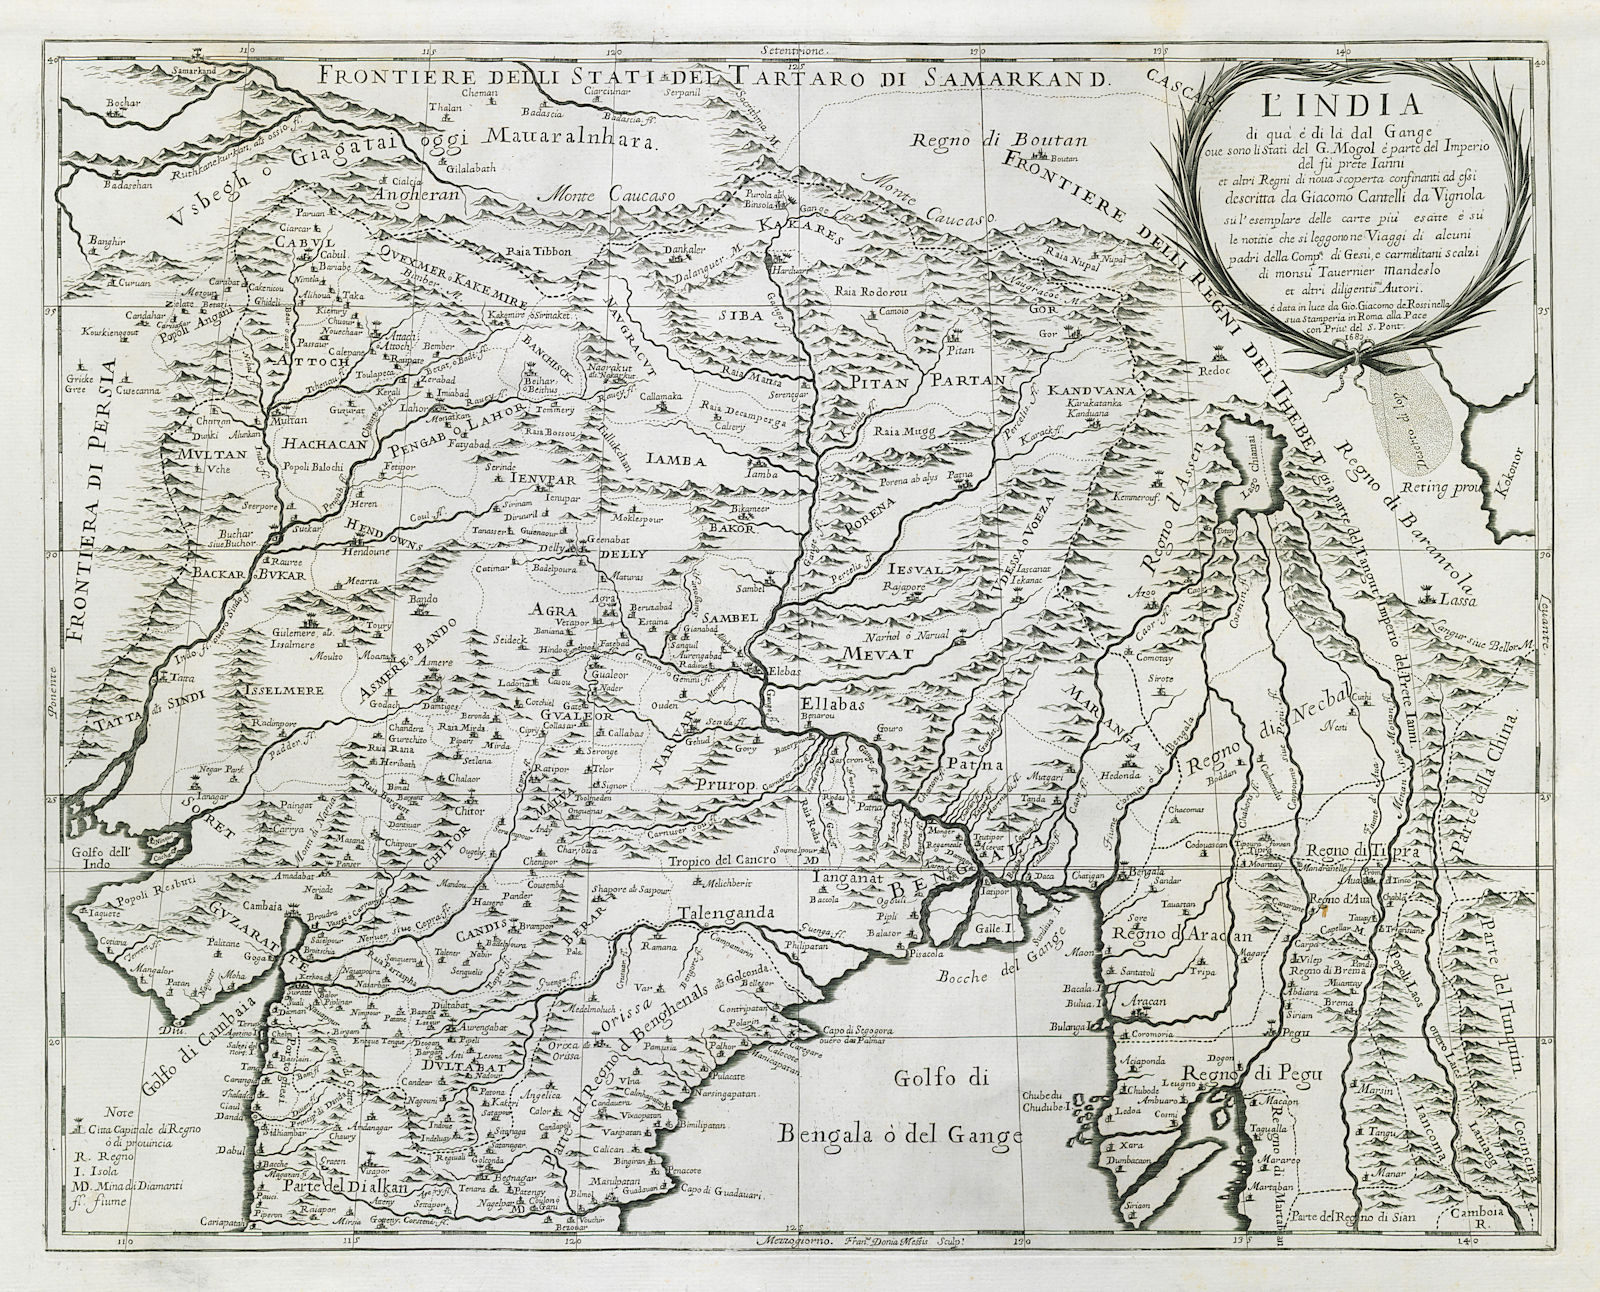 L'India di quà e di la dal Gange. South Asia. DE ROSSI / CANTELLI 1683 old map